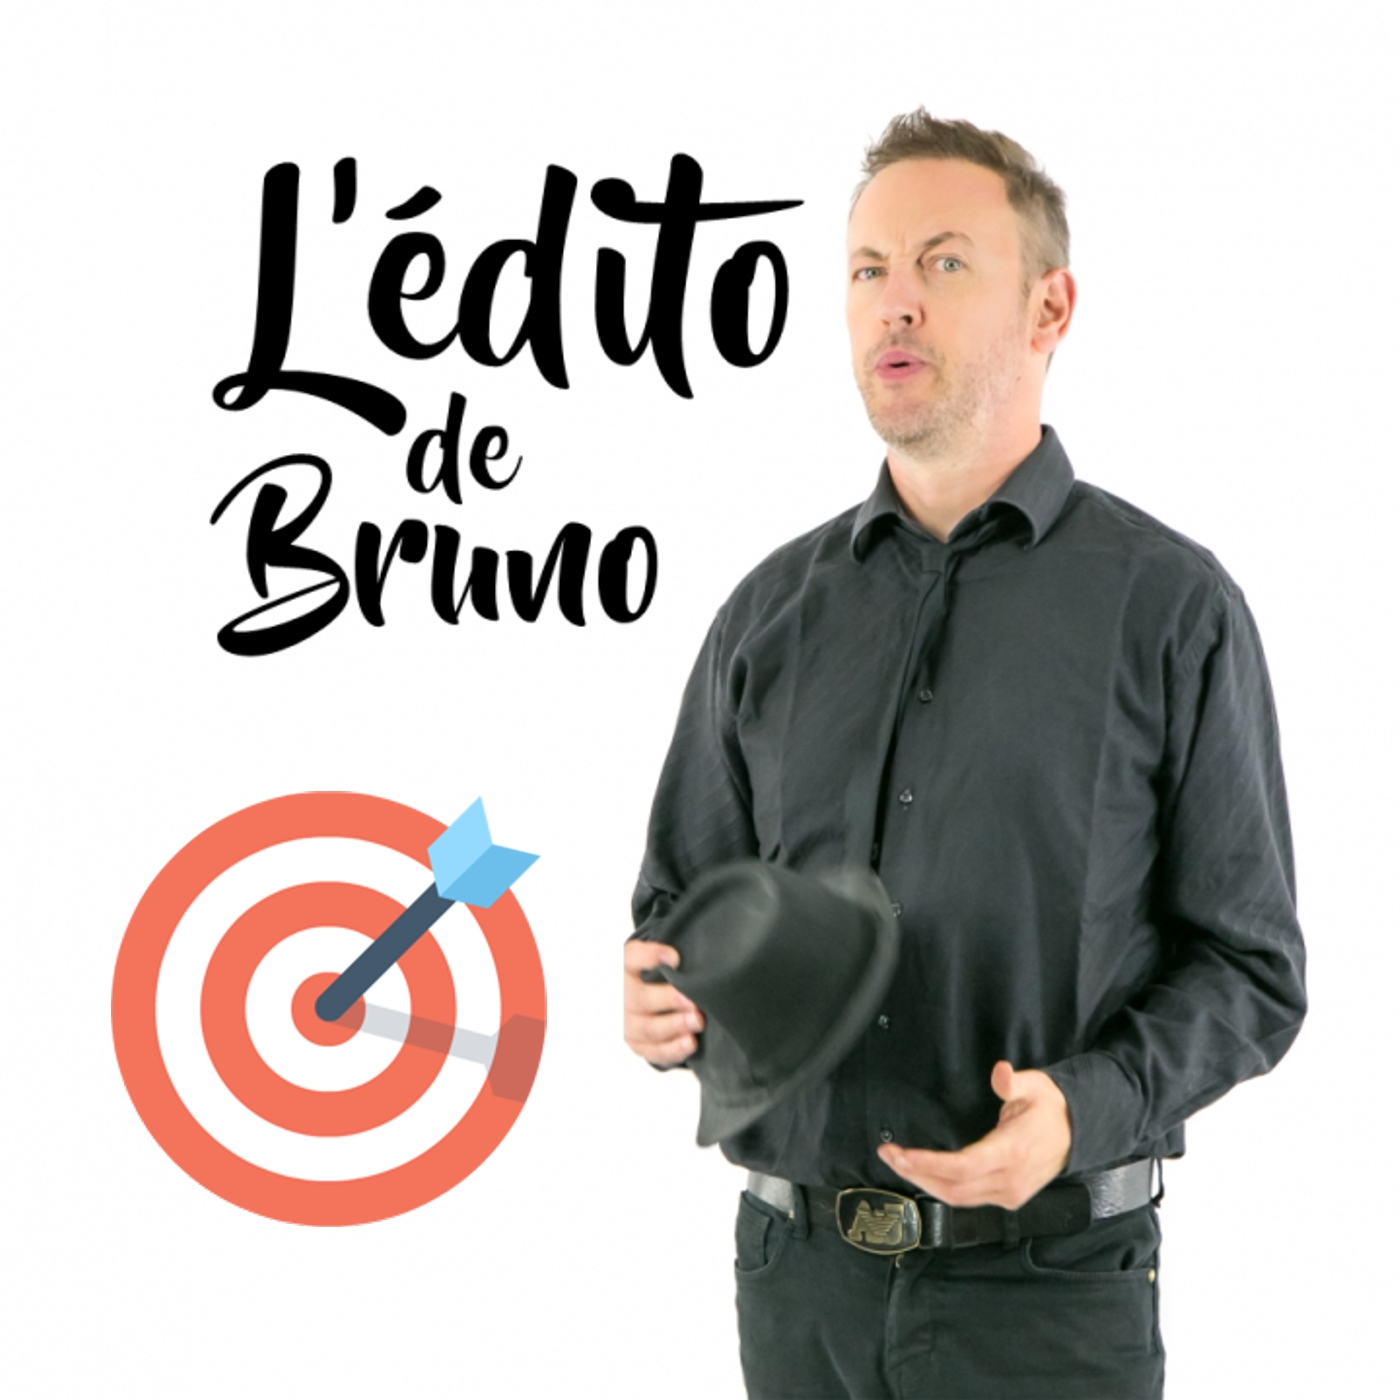 L'édito de Bruno du 29 06 2021 L'édito de Bruno de l'émission Tendance à m'plaire sur Radio G! L'édito de Bruno du 29 06 2021